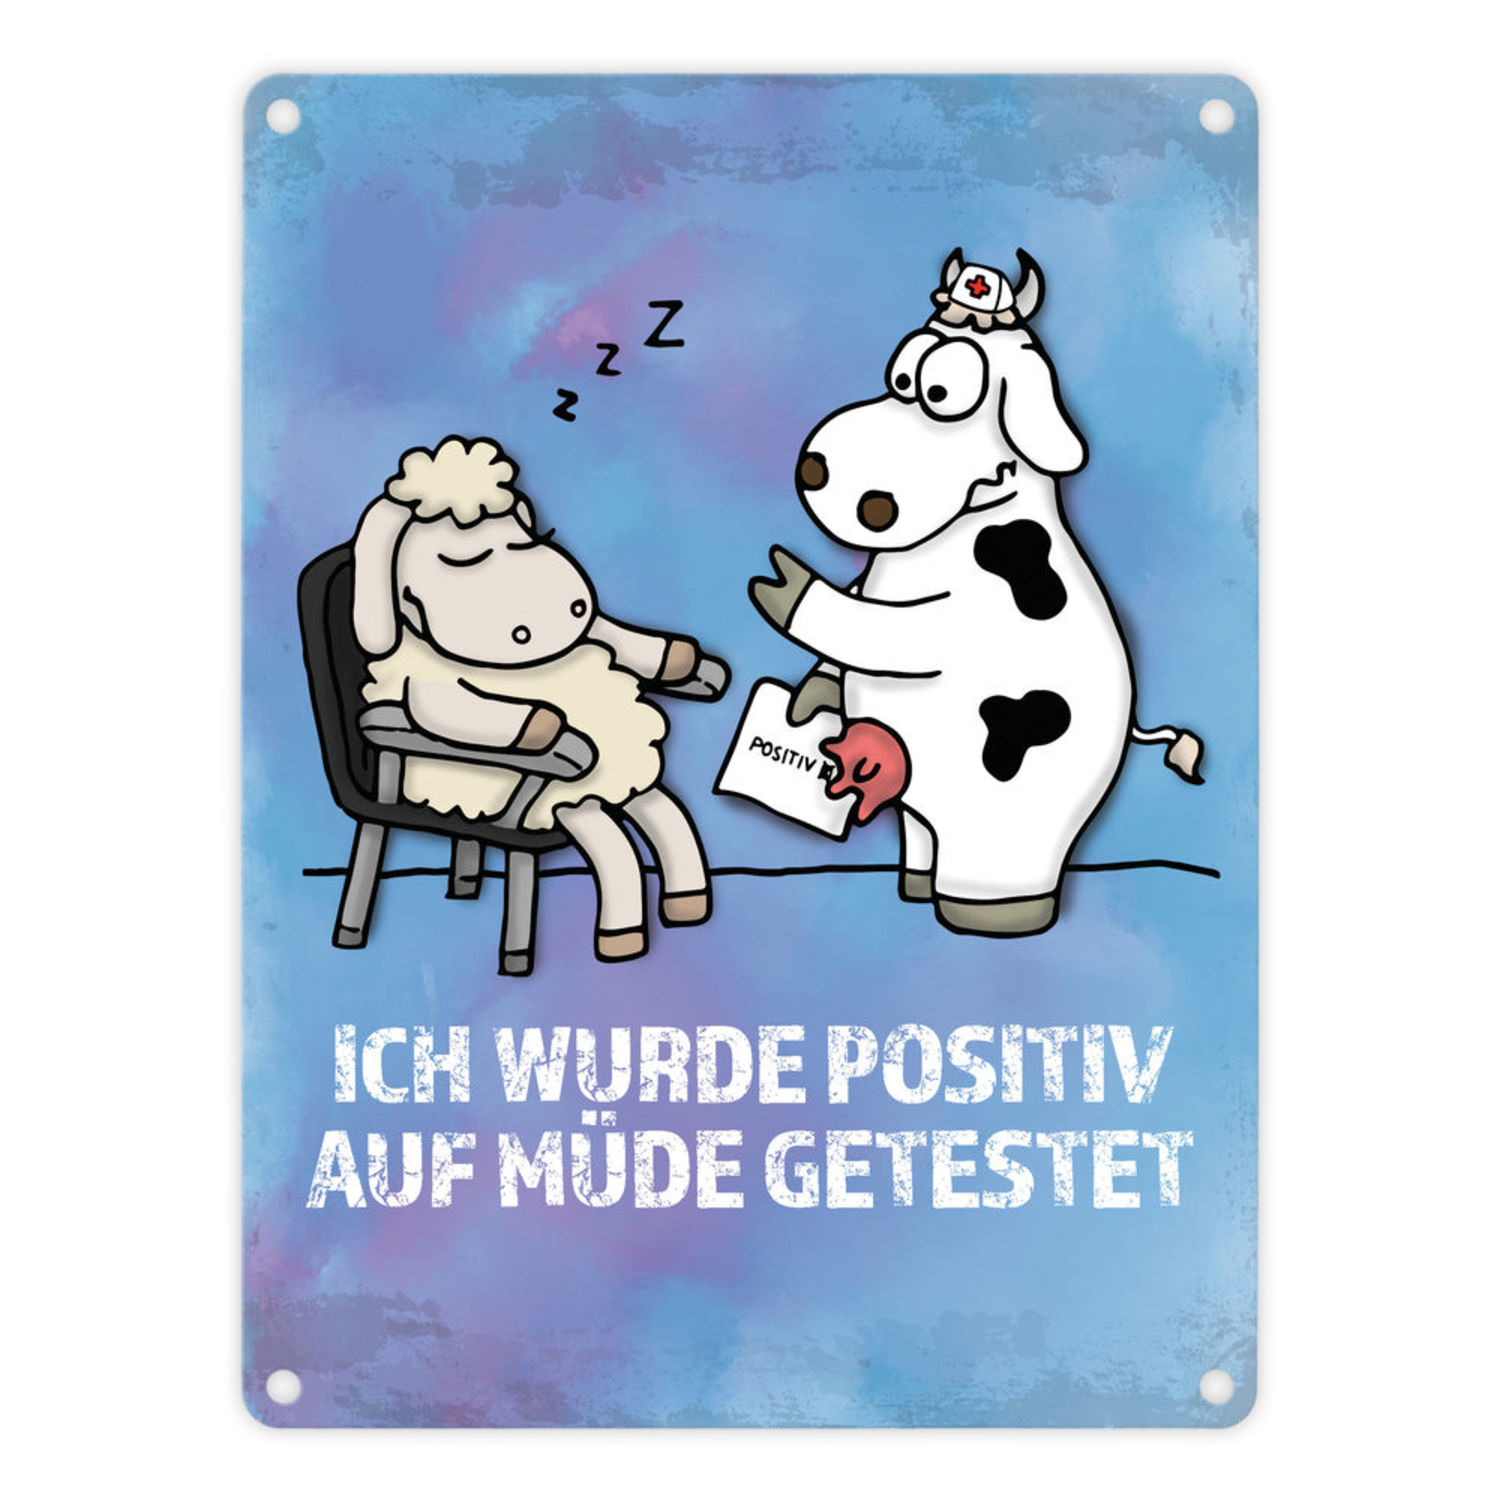 37++ Spruch muede , Metallschild mit Schaf und Kuh Motiv und Spruch Positiv auf Müde getestet bei trendaffe.de